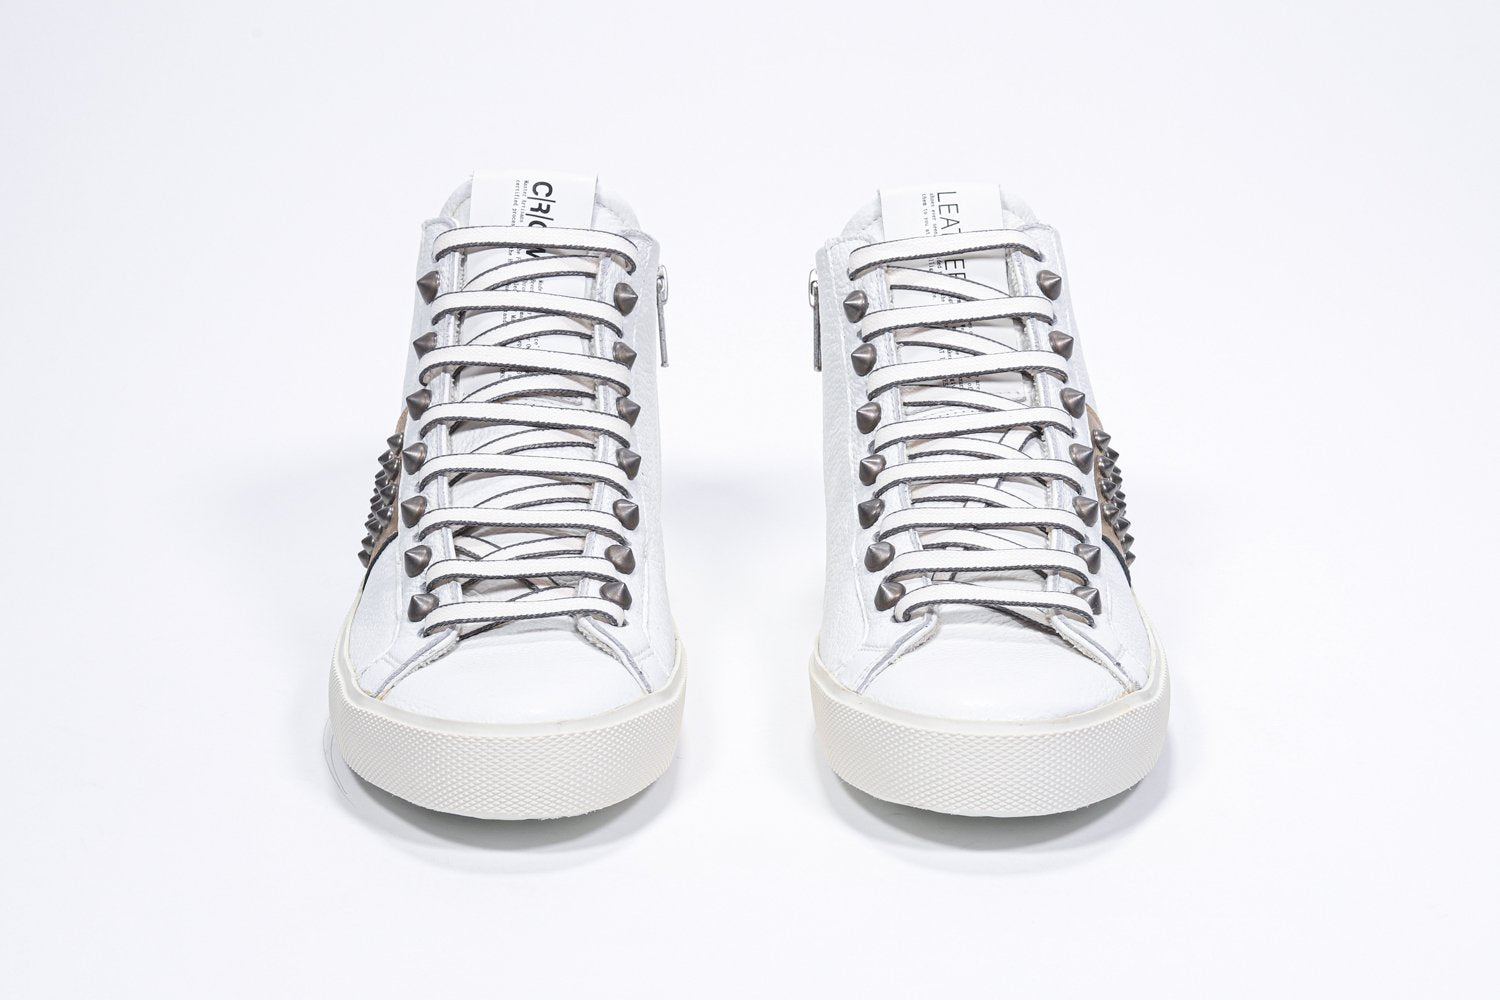 Vue de face d'un modèle intermédiaire blanc et or métallisé sneaker. Tige en cuir avec clous, fermeture à glissière intérieure et semelle en caoutchouc vintage.